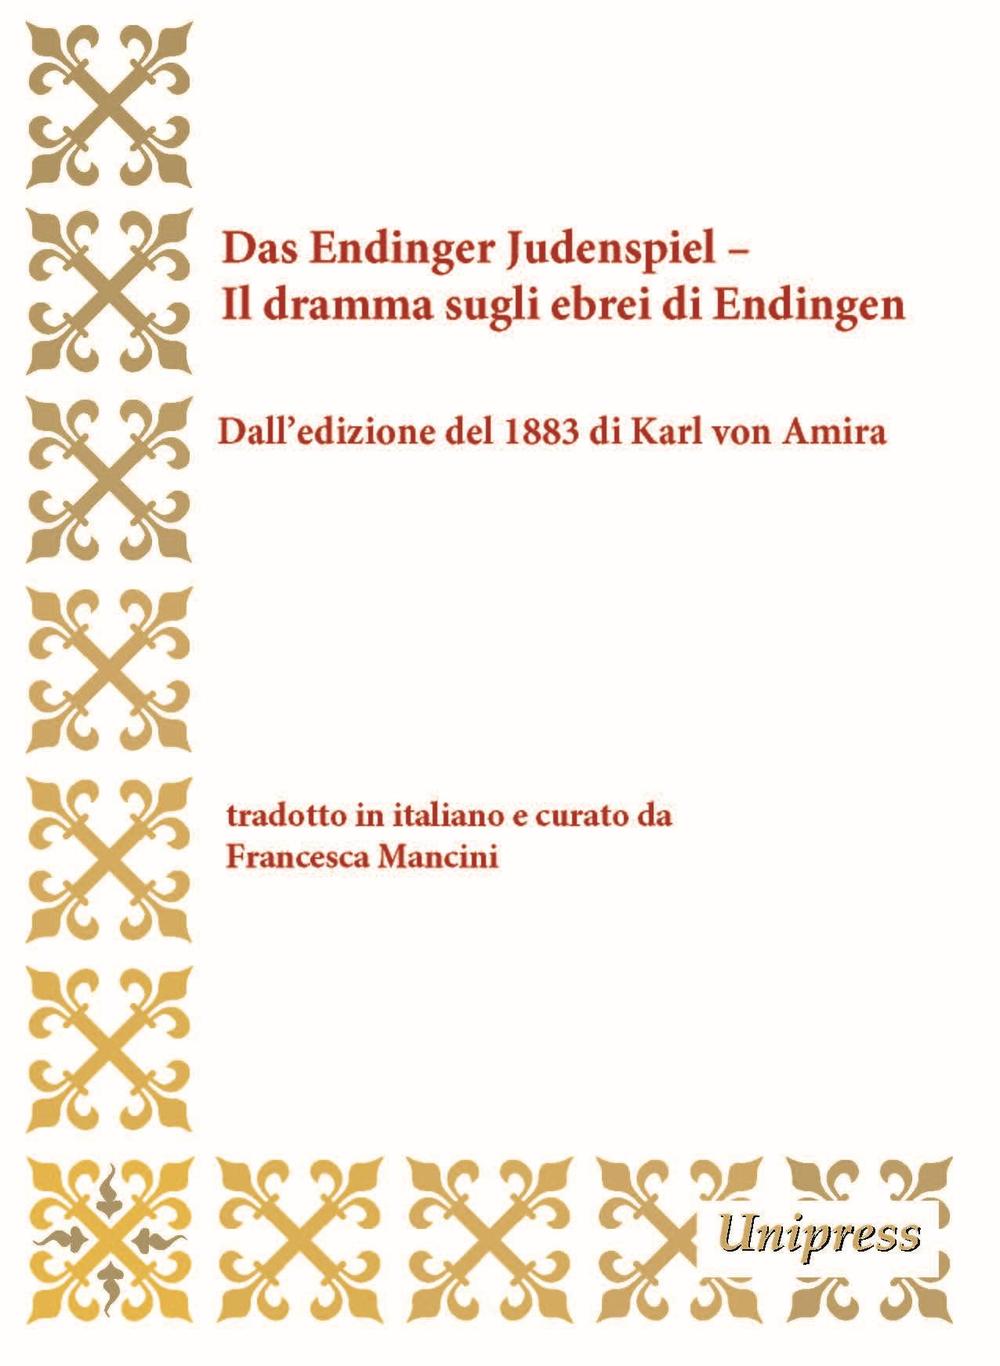 Das Endinger Judenspiel-Il dramma sugli ebrei di Endingen. Dall'edizione del 1883 di Karl von Amira. Testo tedesco a fronte